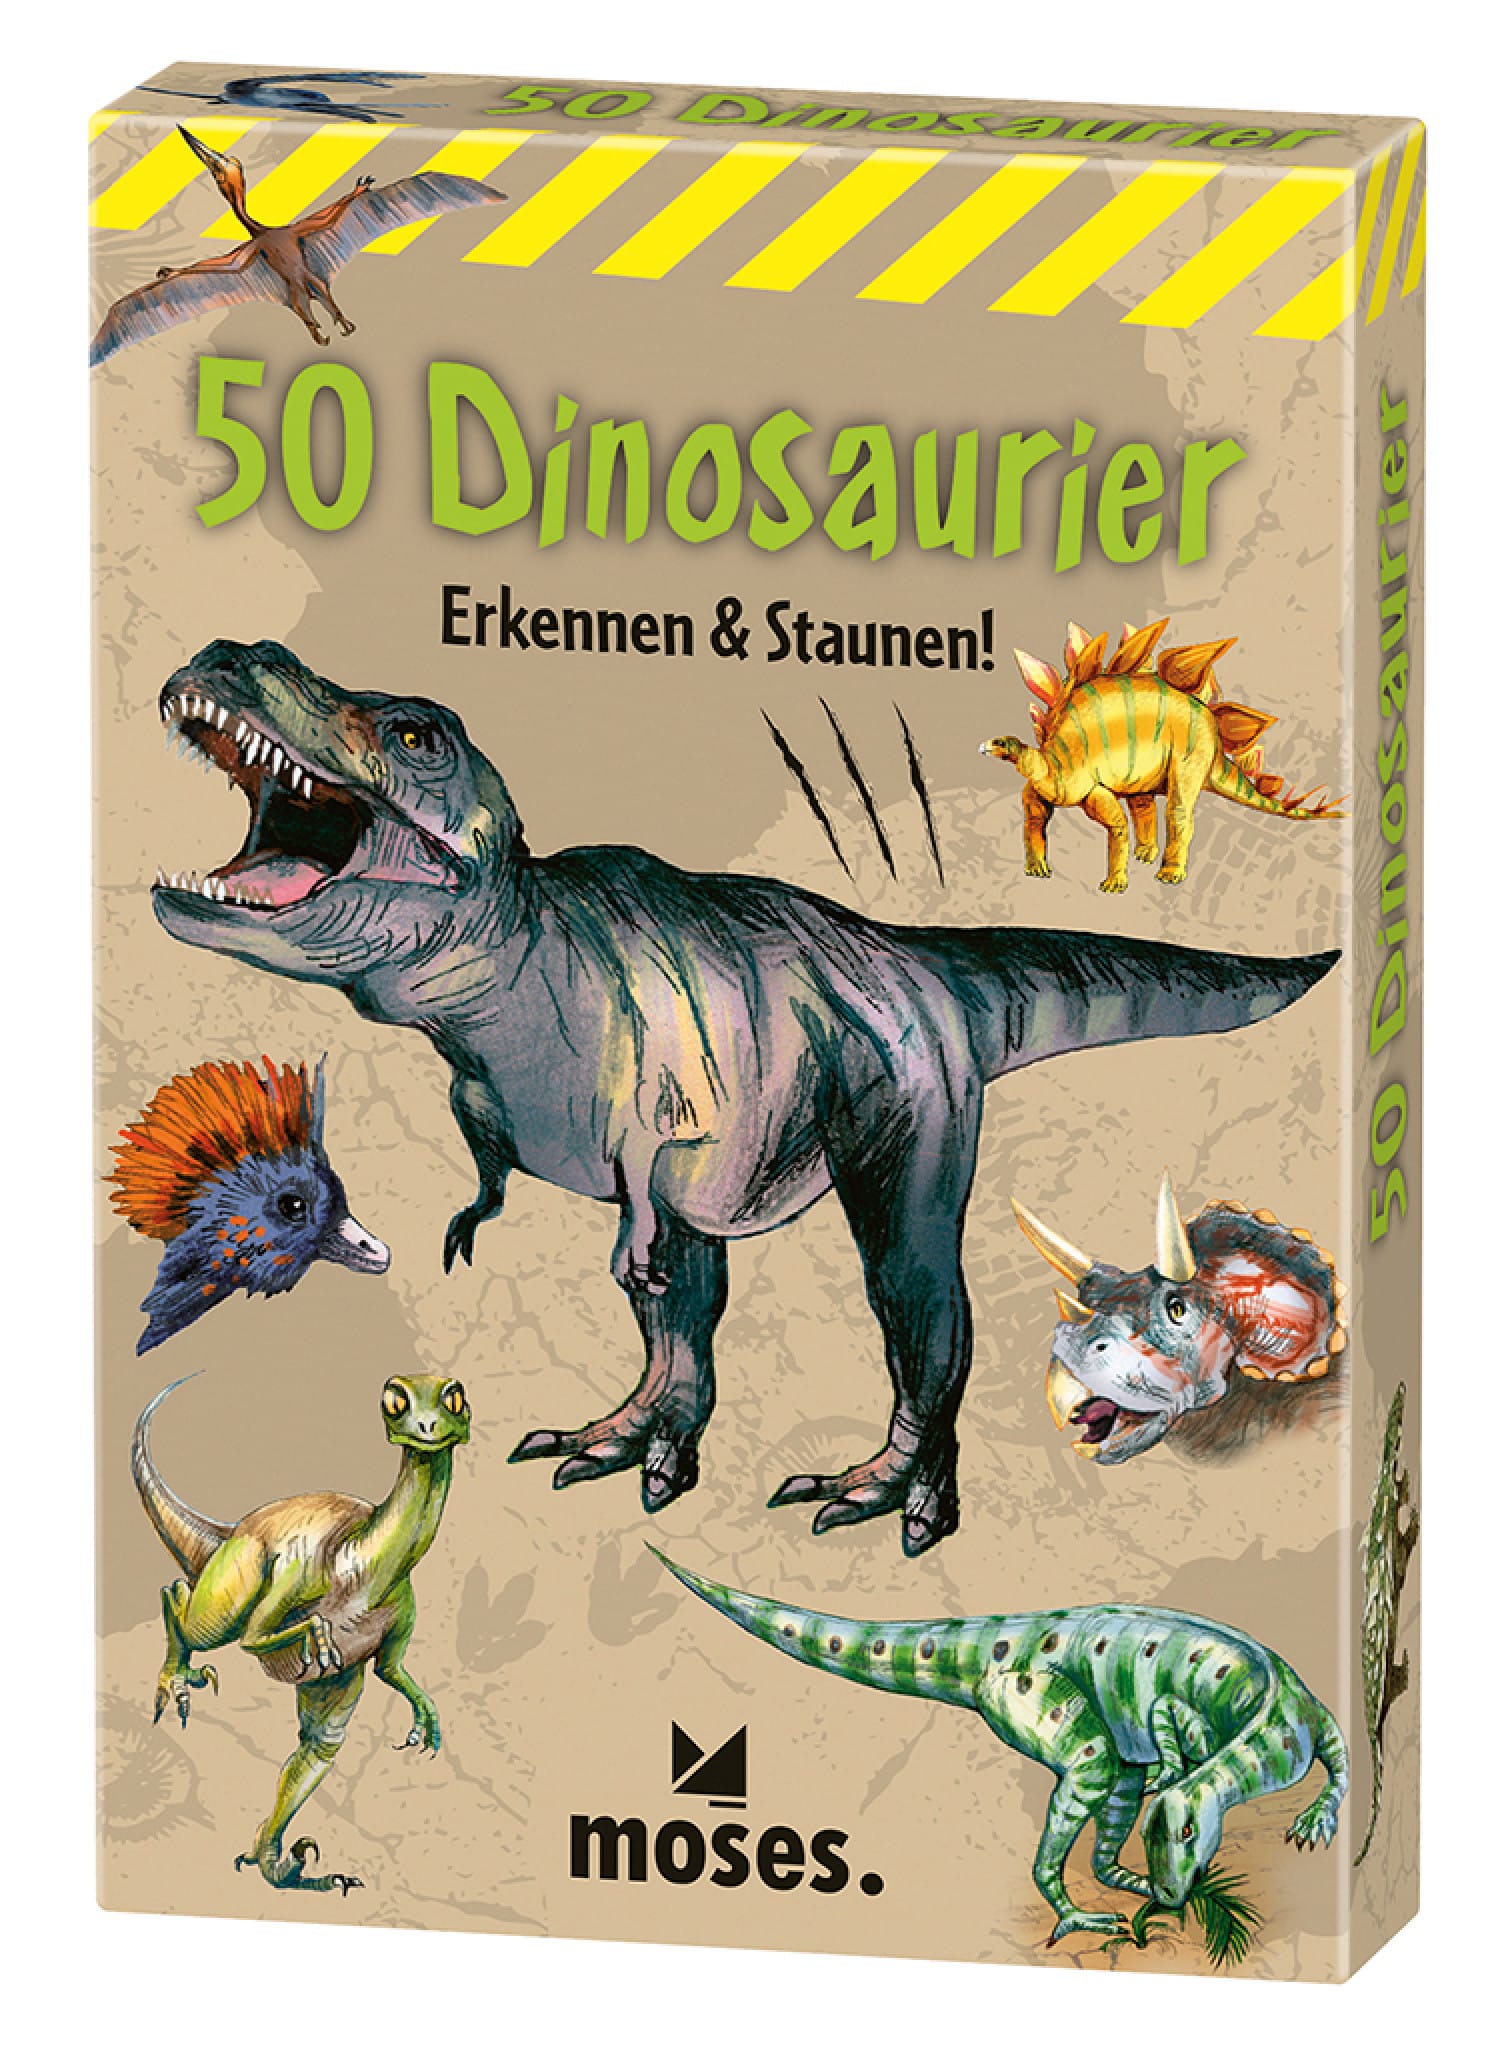 50 Dinosaurier – erkennen & staunen